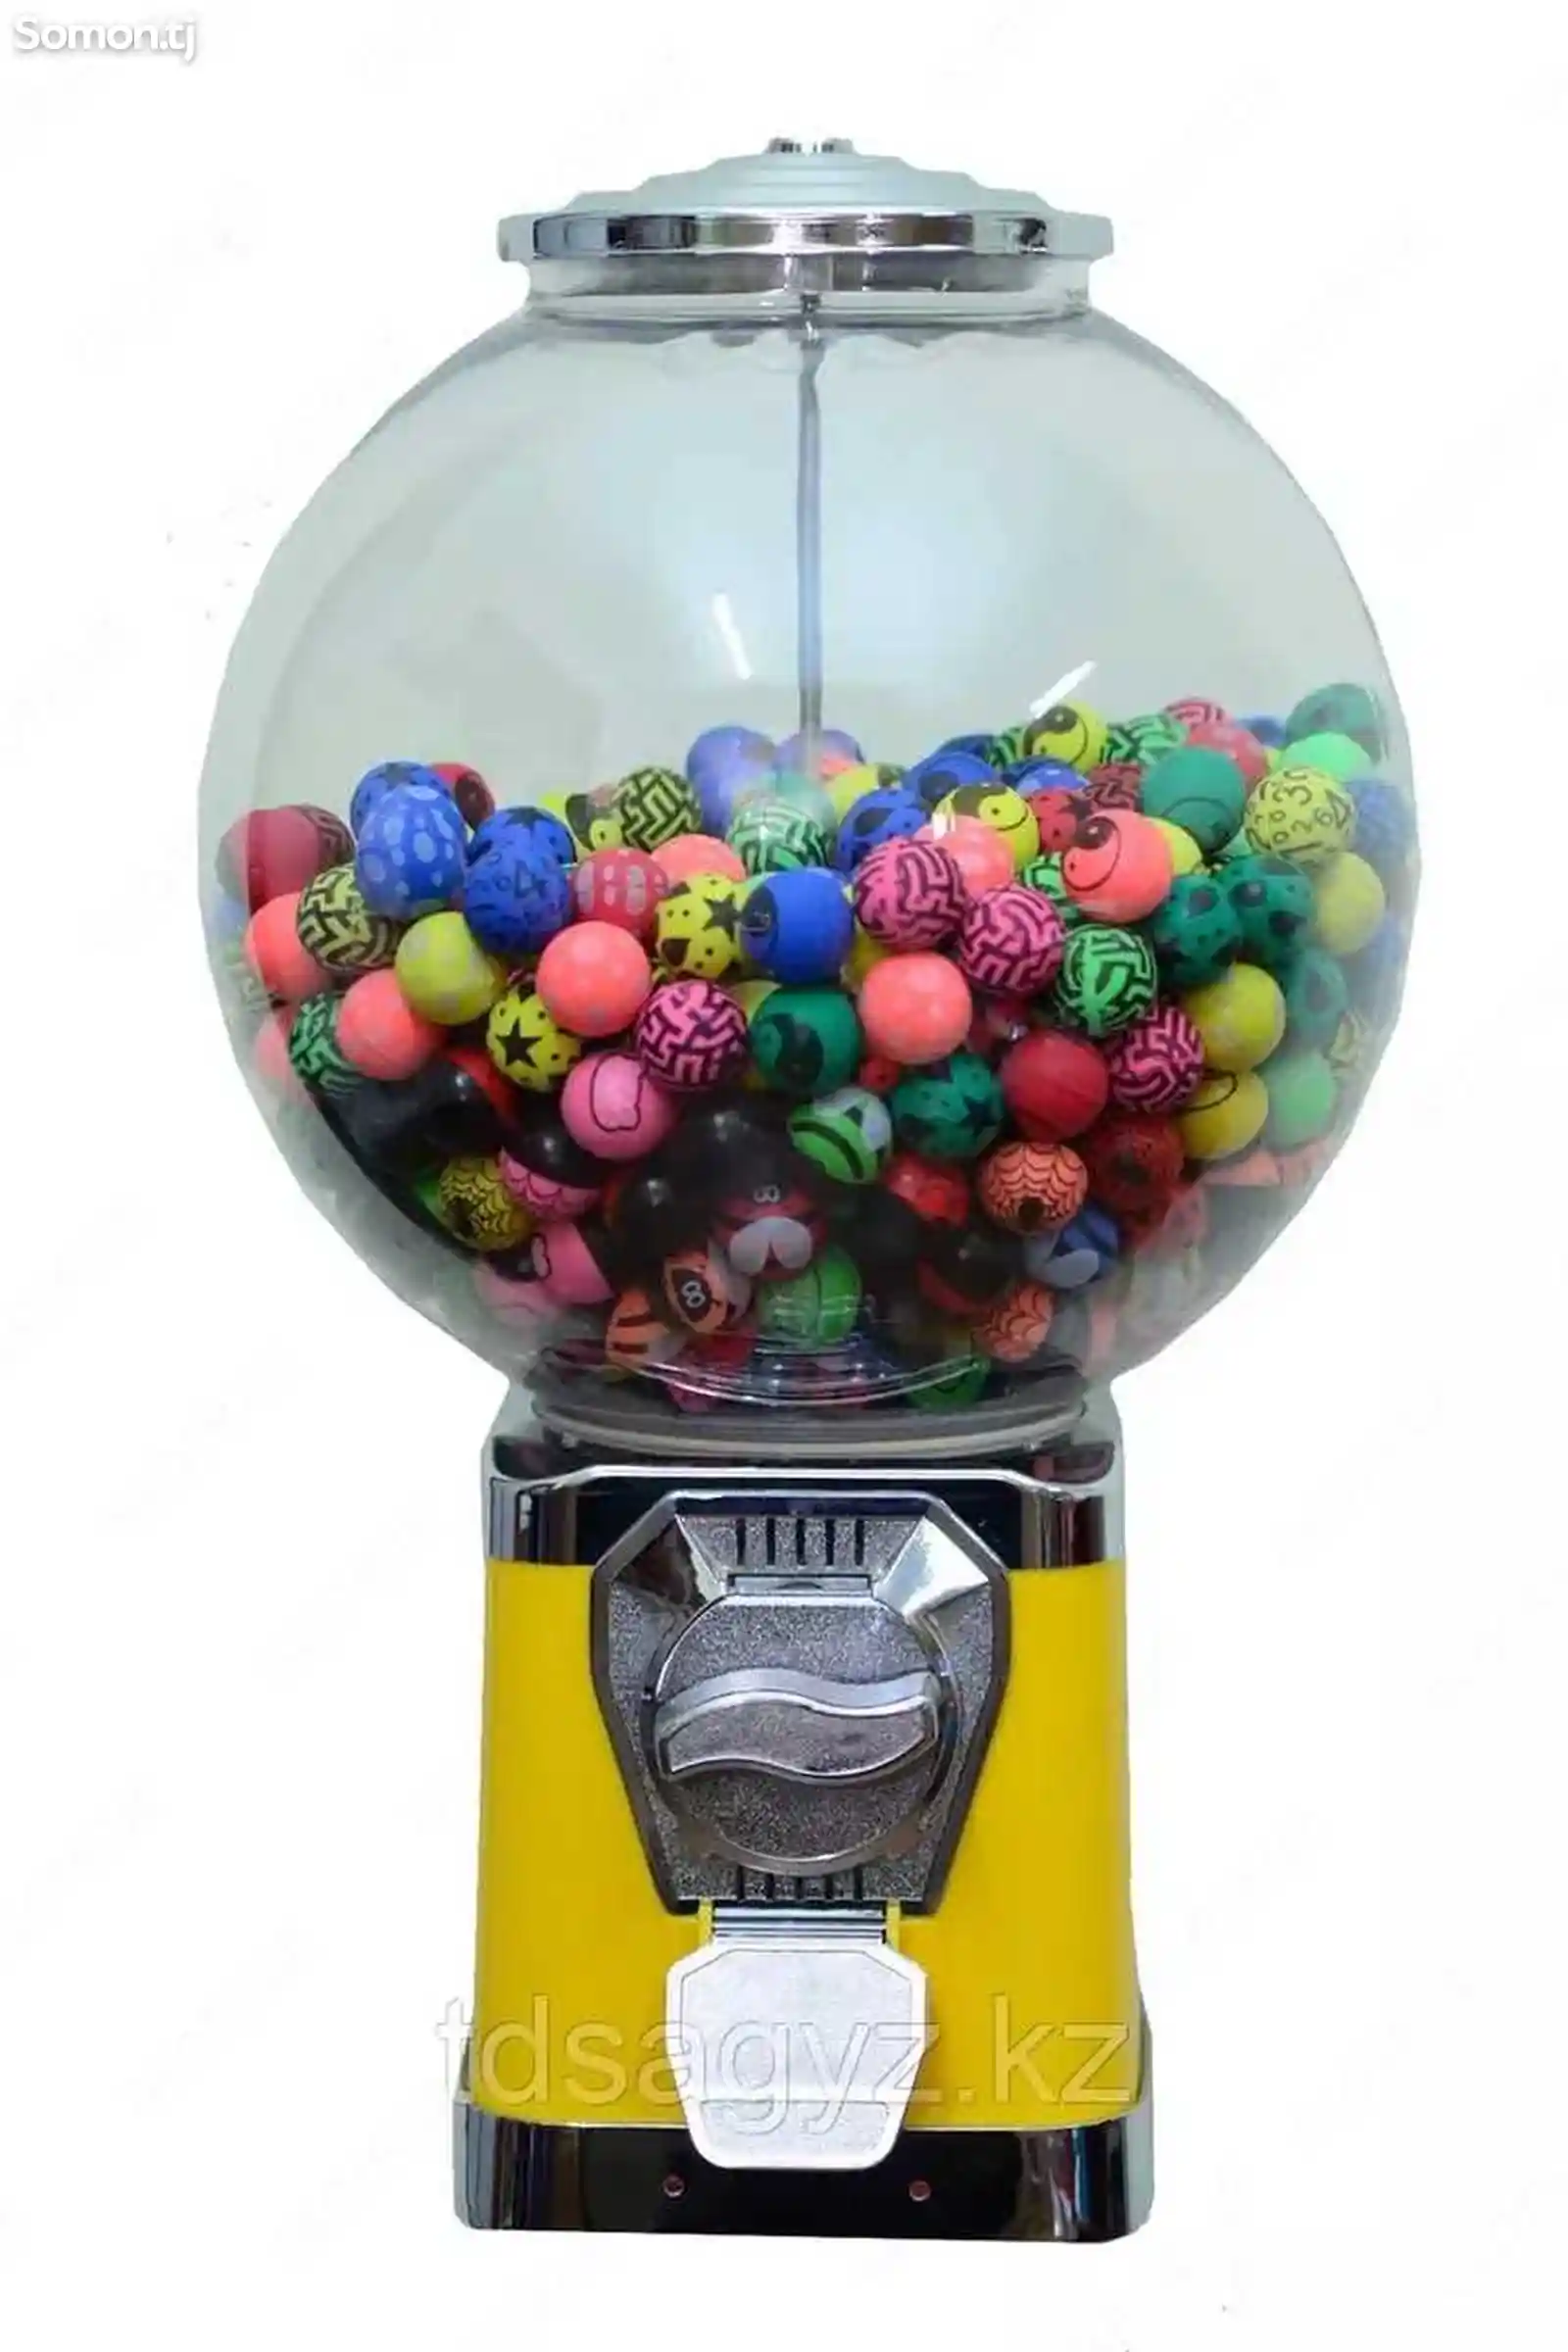 Механические автоматы по продажам жевательных резинок и мячей прыгунов-1